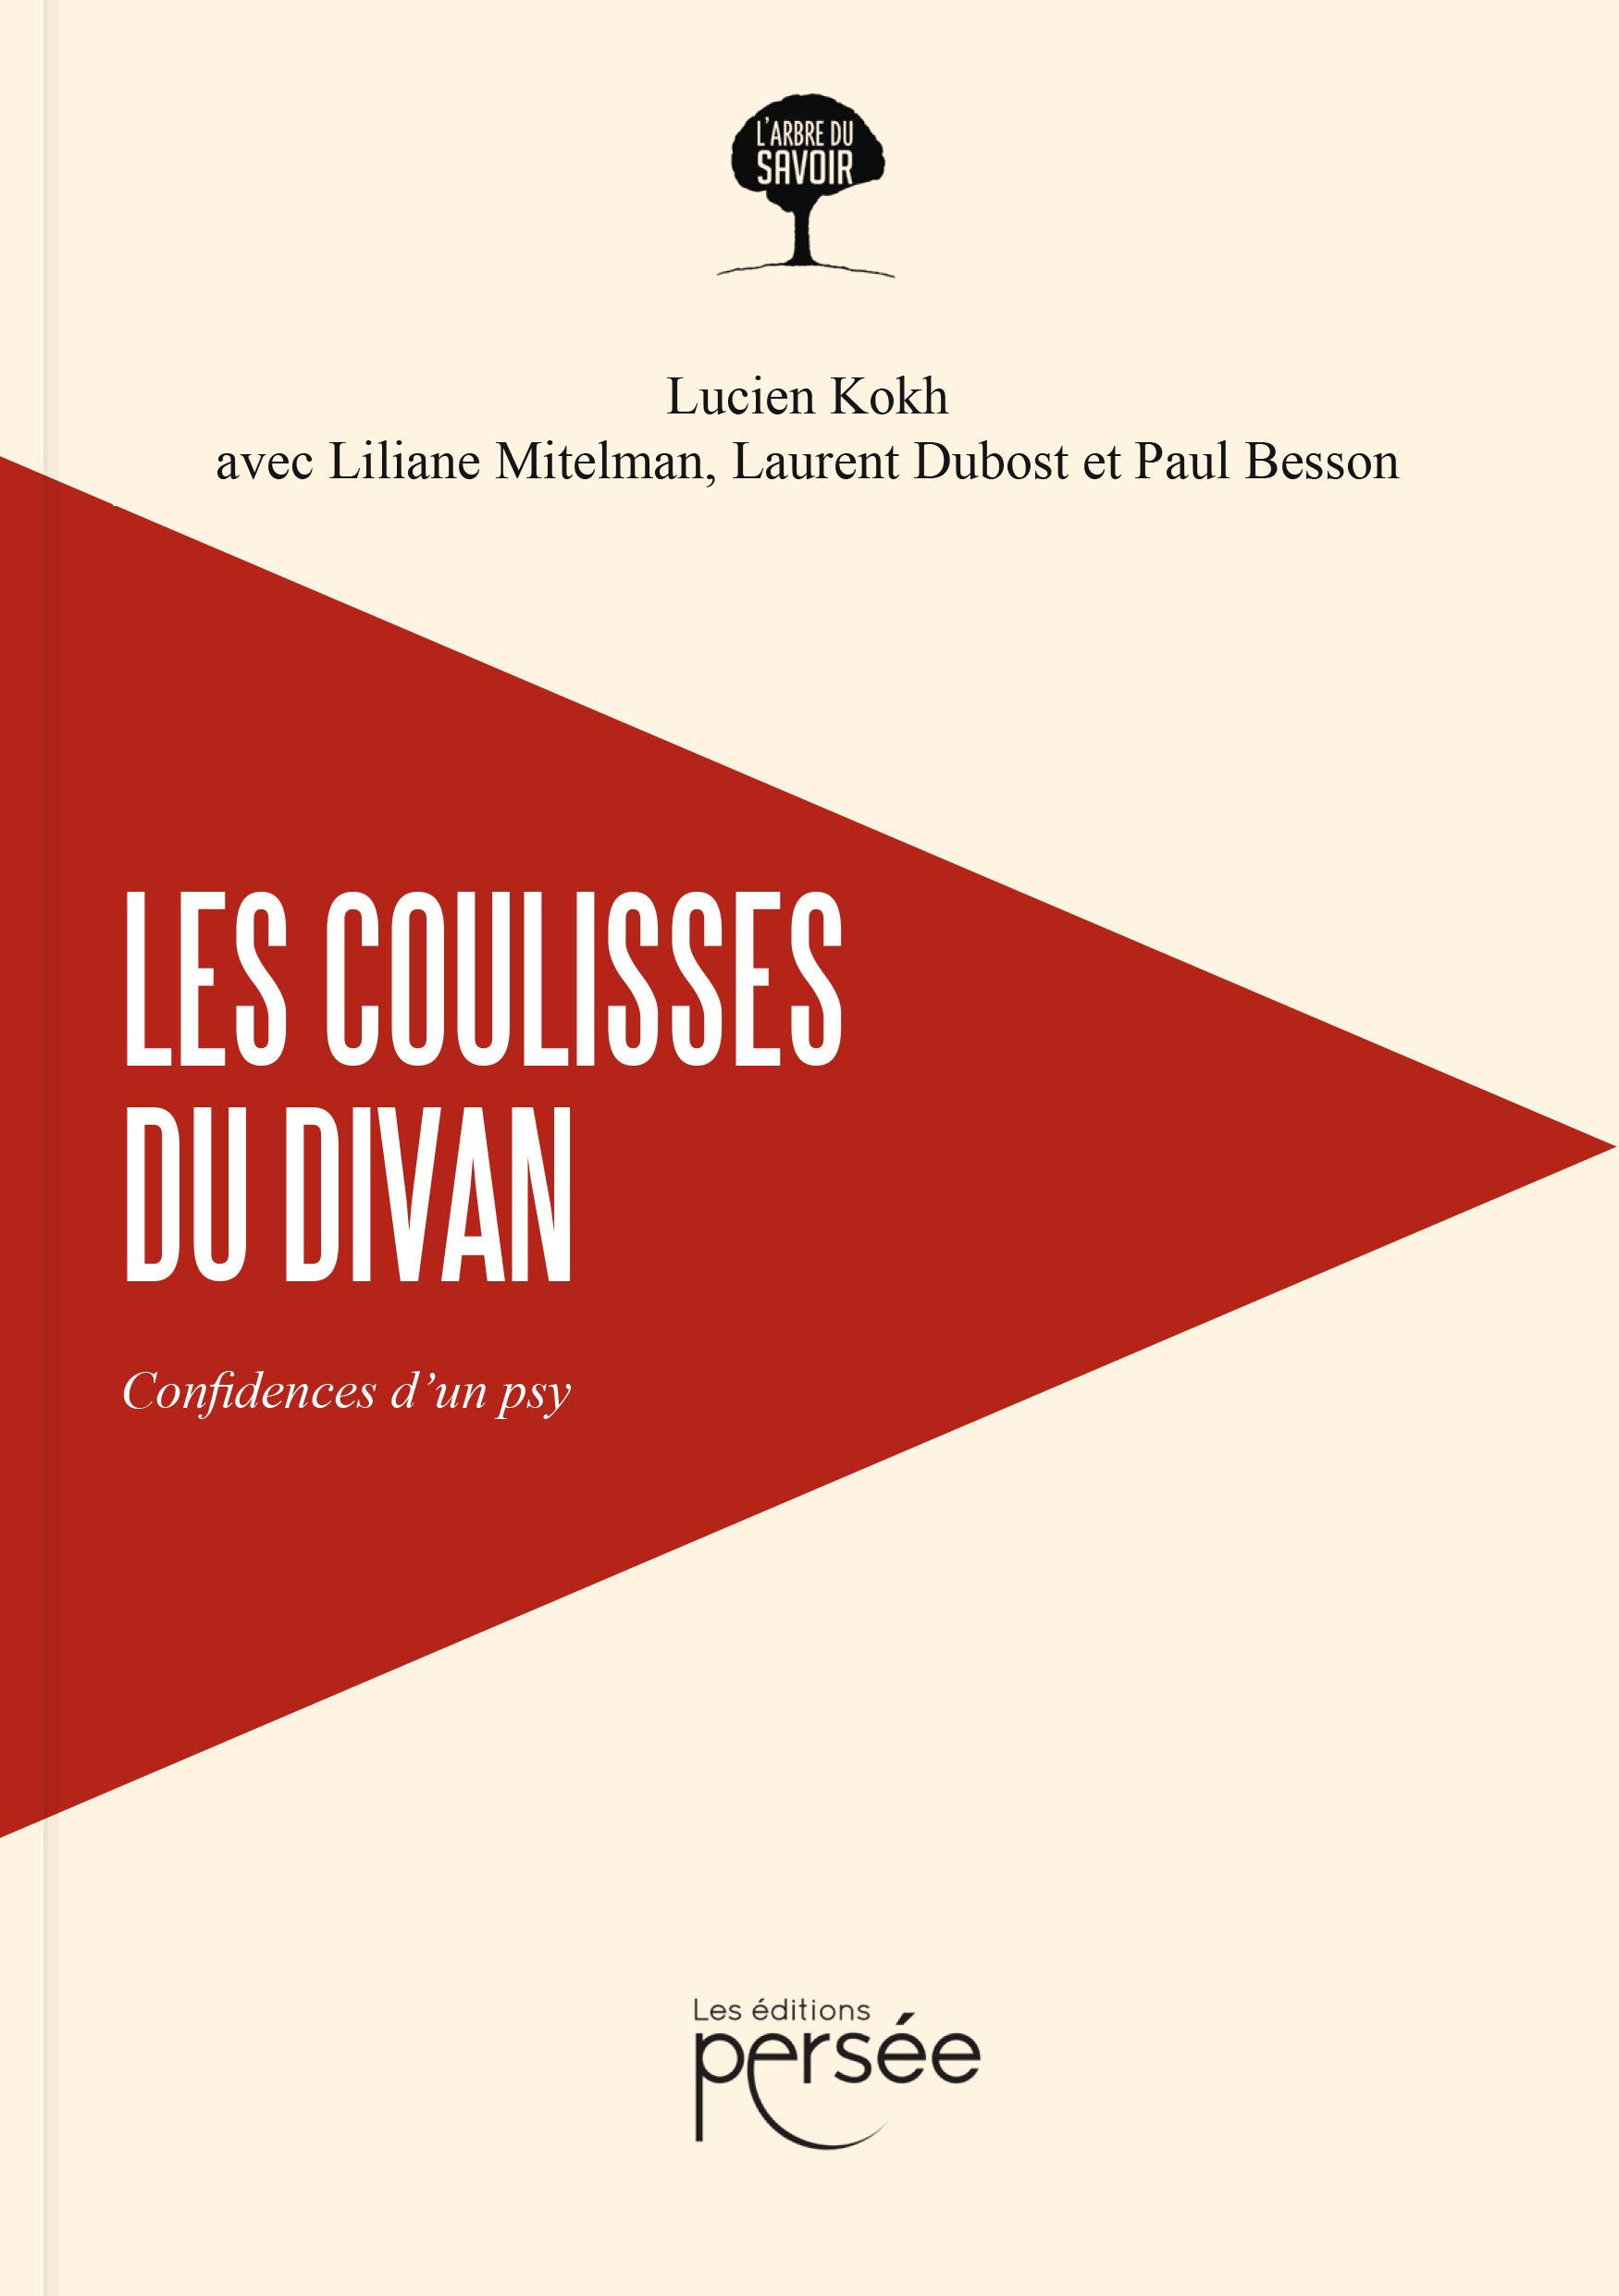 couverture du livre « Les coulisses du divan. Confidences d’un psy », de Lucien Kokh, avec avec Liliane Mitelman, Laurent Dubost et Paul Besson. ISBN : 978-2-8231-3505-3.